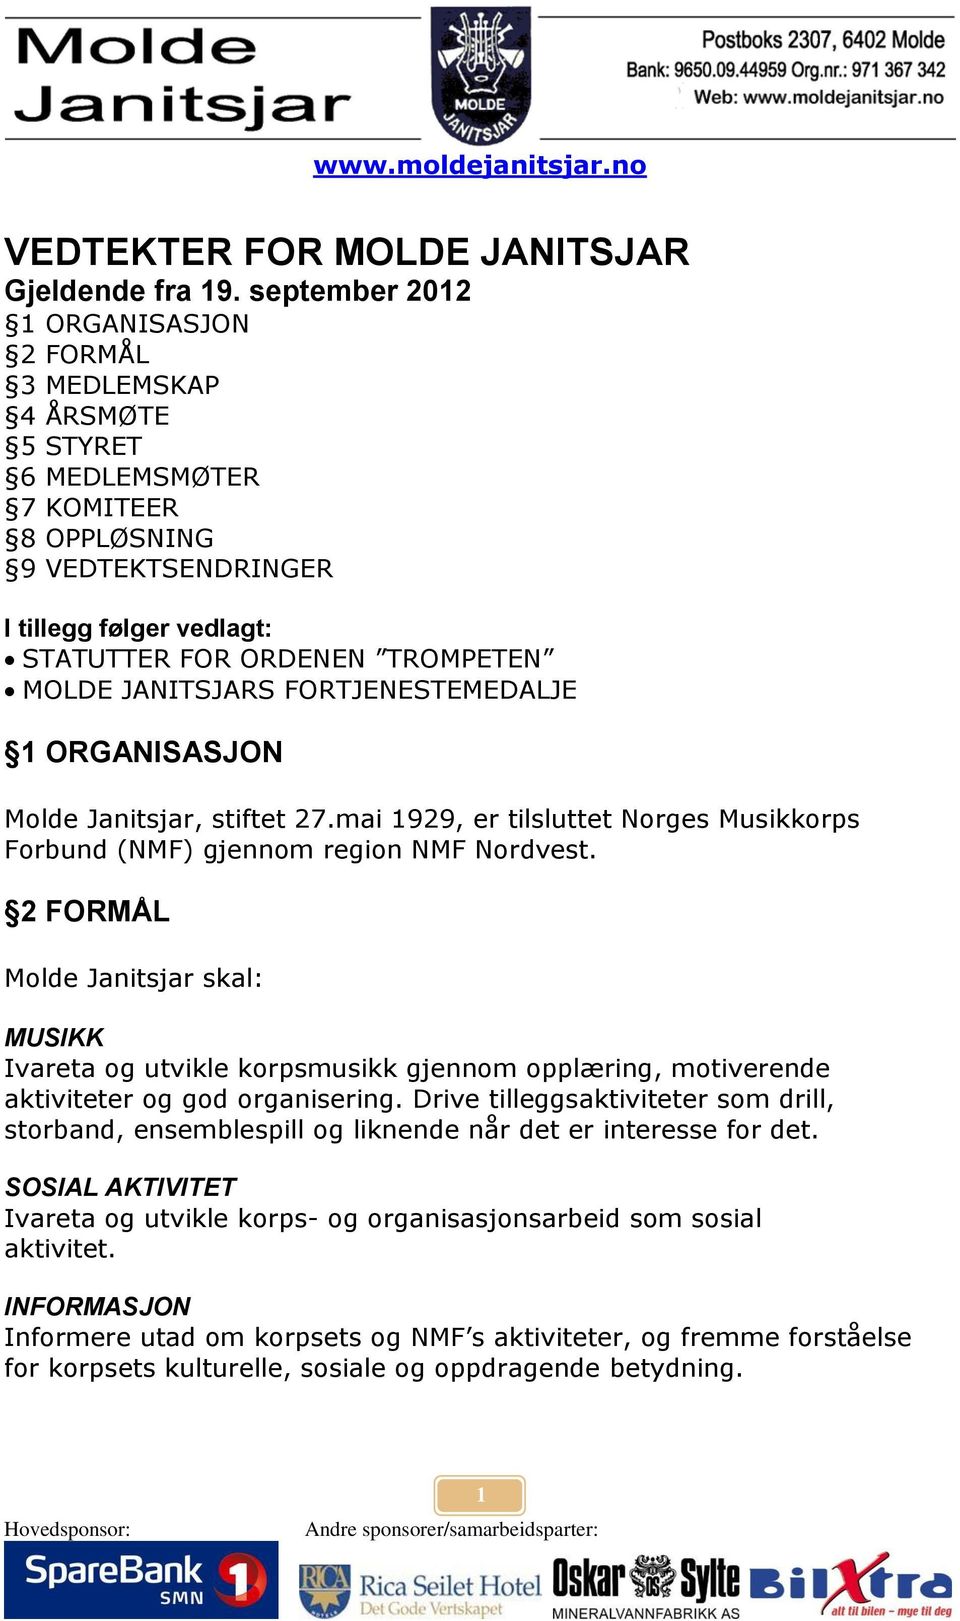 JANITSJARS FORTJENESTEMEDALJE 1 ORGANISASJON Molde Janitsjar, stiftet 27.mai 1929, er tilsluttet Norges Musikkorps Forbund (NMF) gjennom region NMF Nordvest.